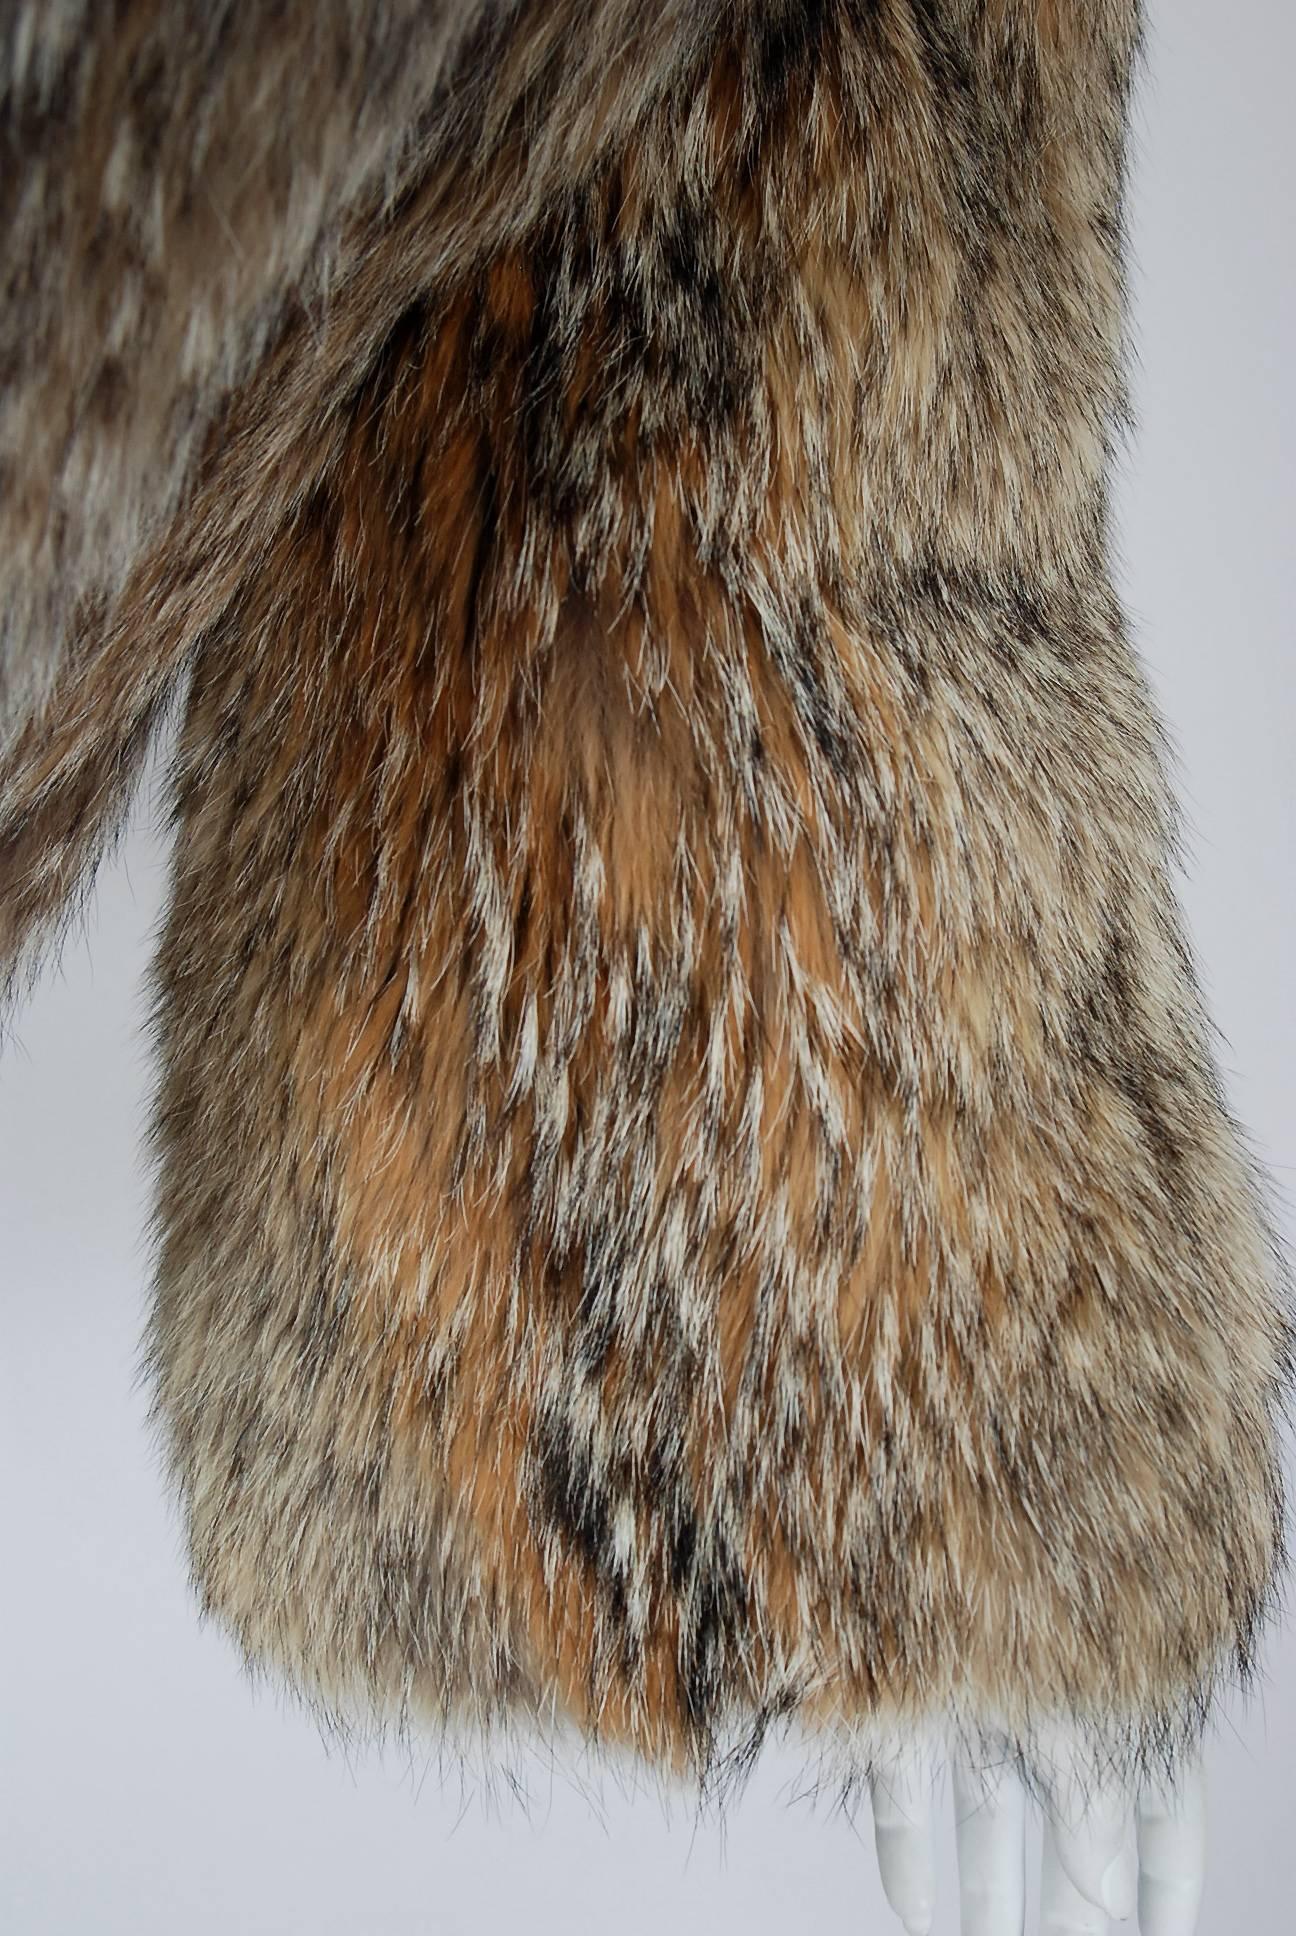 christian dior fourrure fur coat